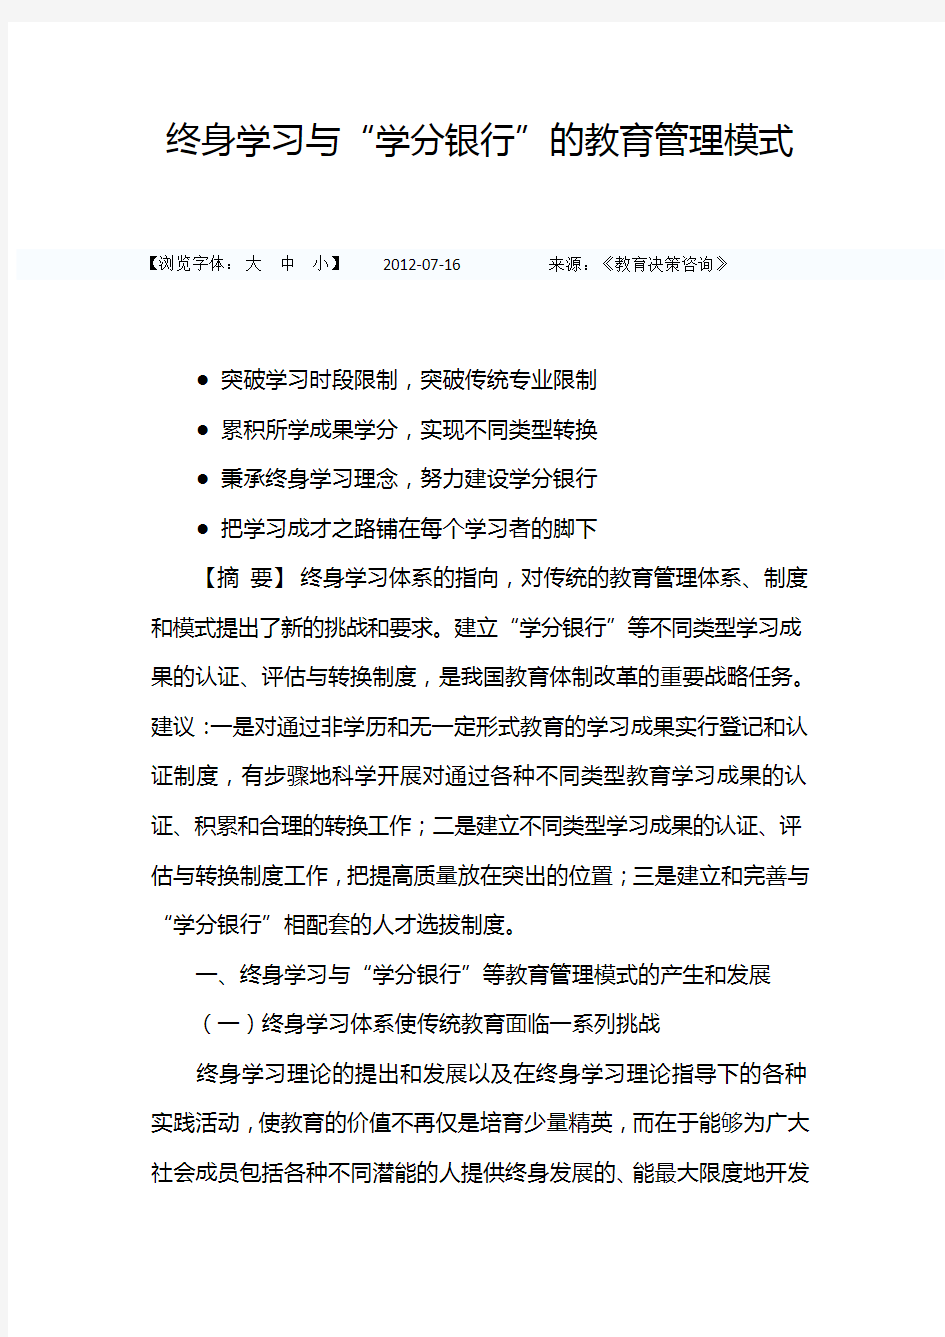 中国教育部-终身学习与“学分银行”的教育管理模式